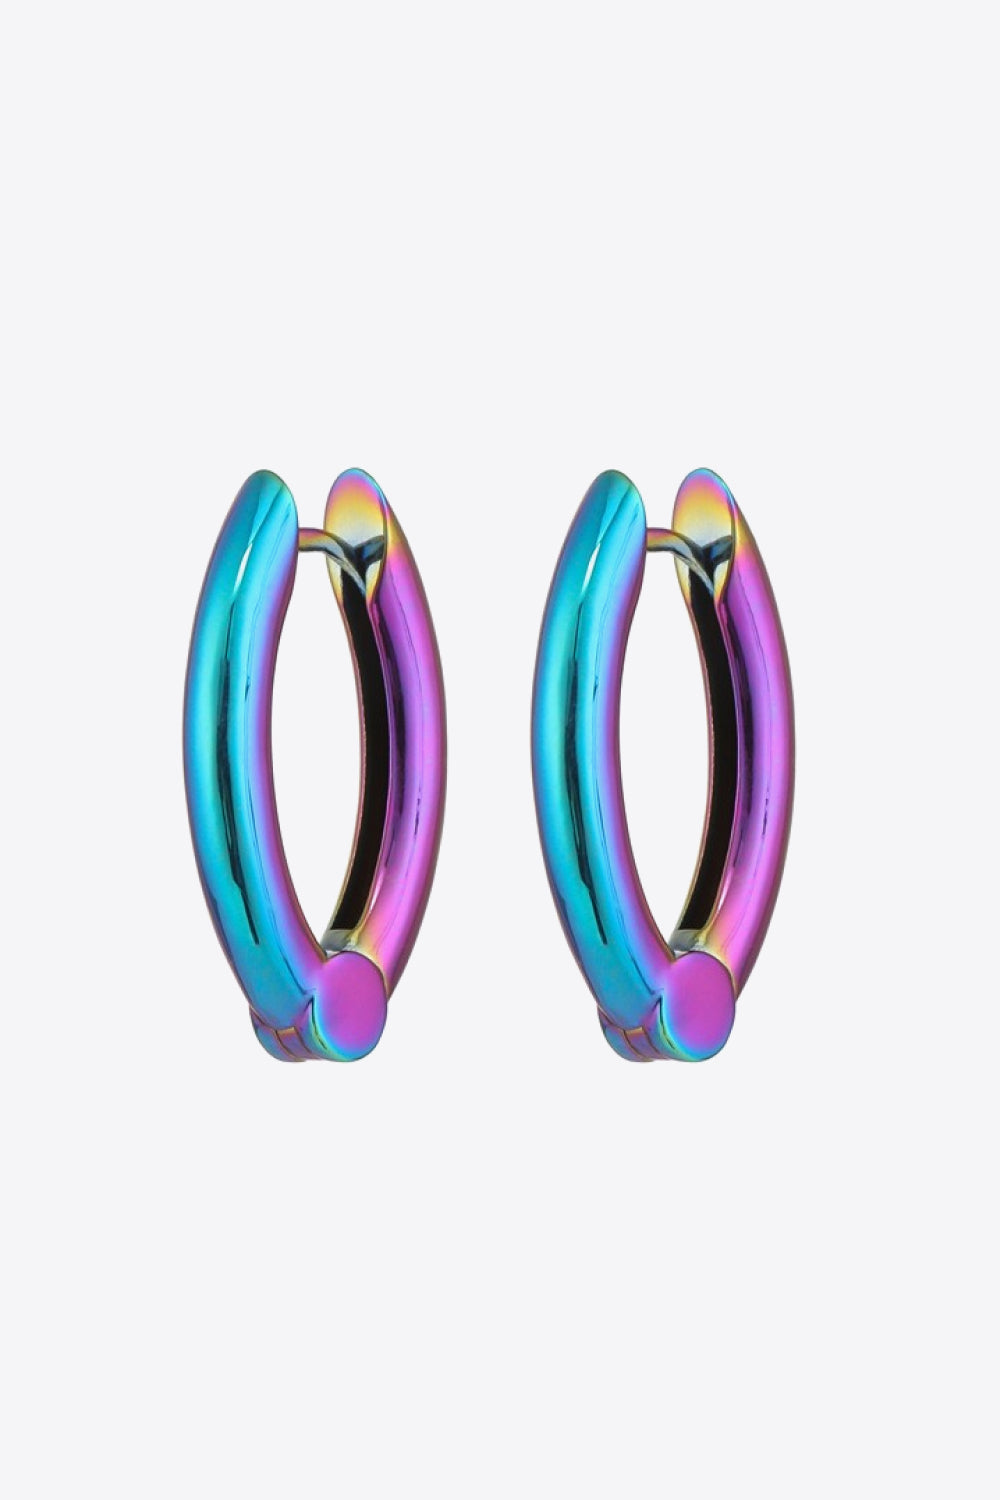 Bring It Home Multicolored Huggie Earrings - Earrings - FITGGINS